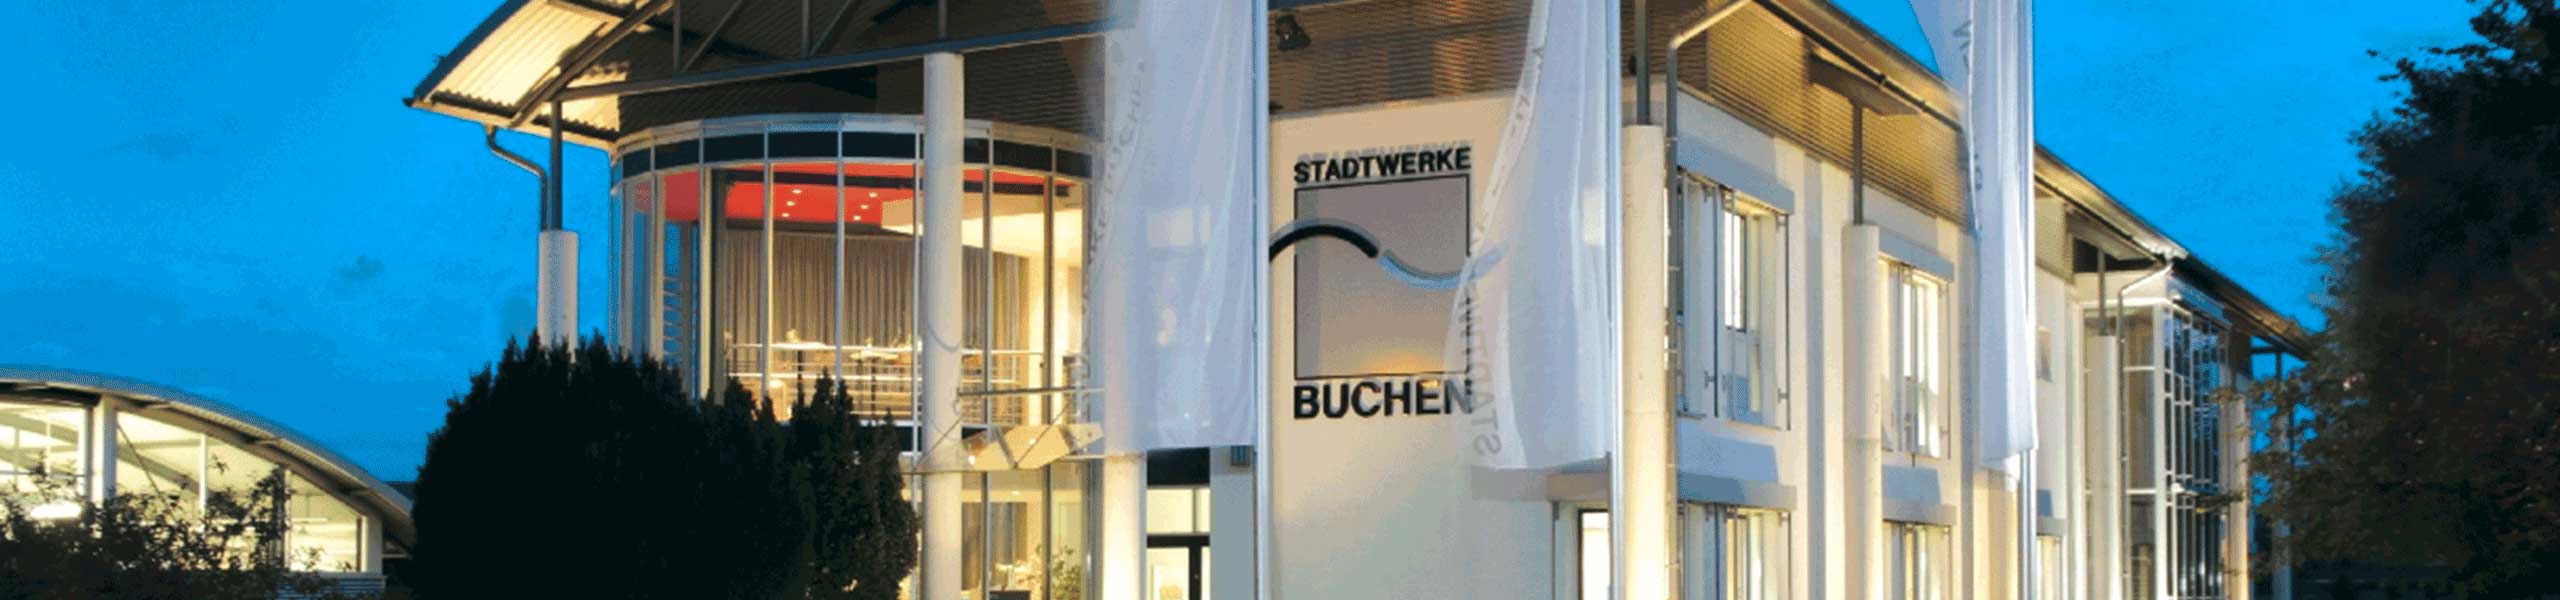 Stadtwerke Buchen GmbH & Co KG - Von Anfang an dabei: Die Stadtwerke Buchen bereits zum 14-mal Sponsor des Osterburkener Stadtlaufs